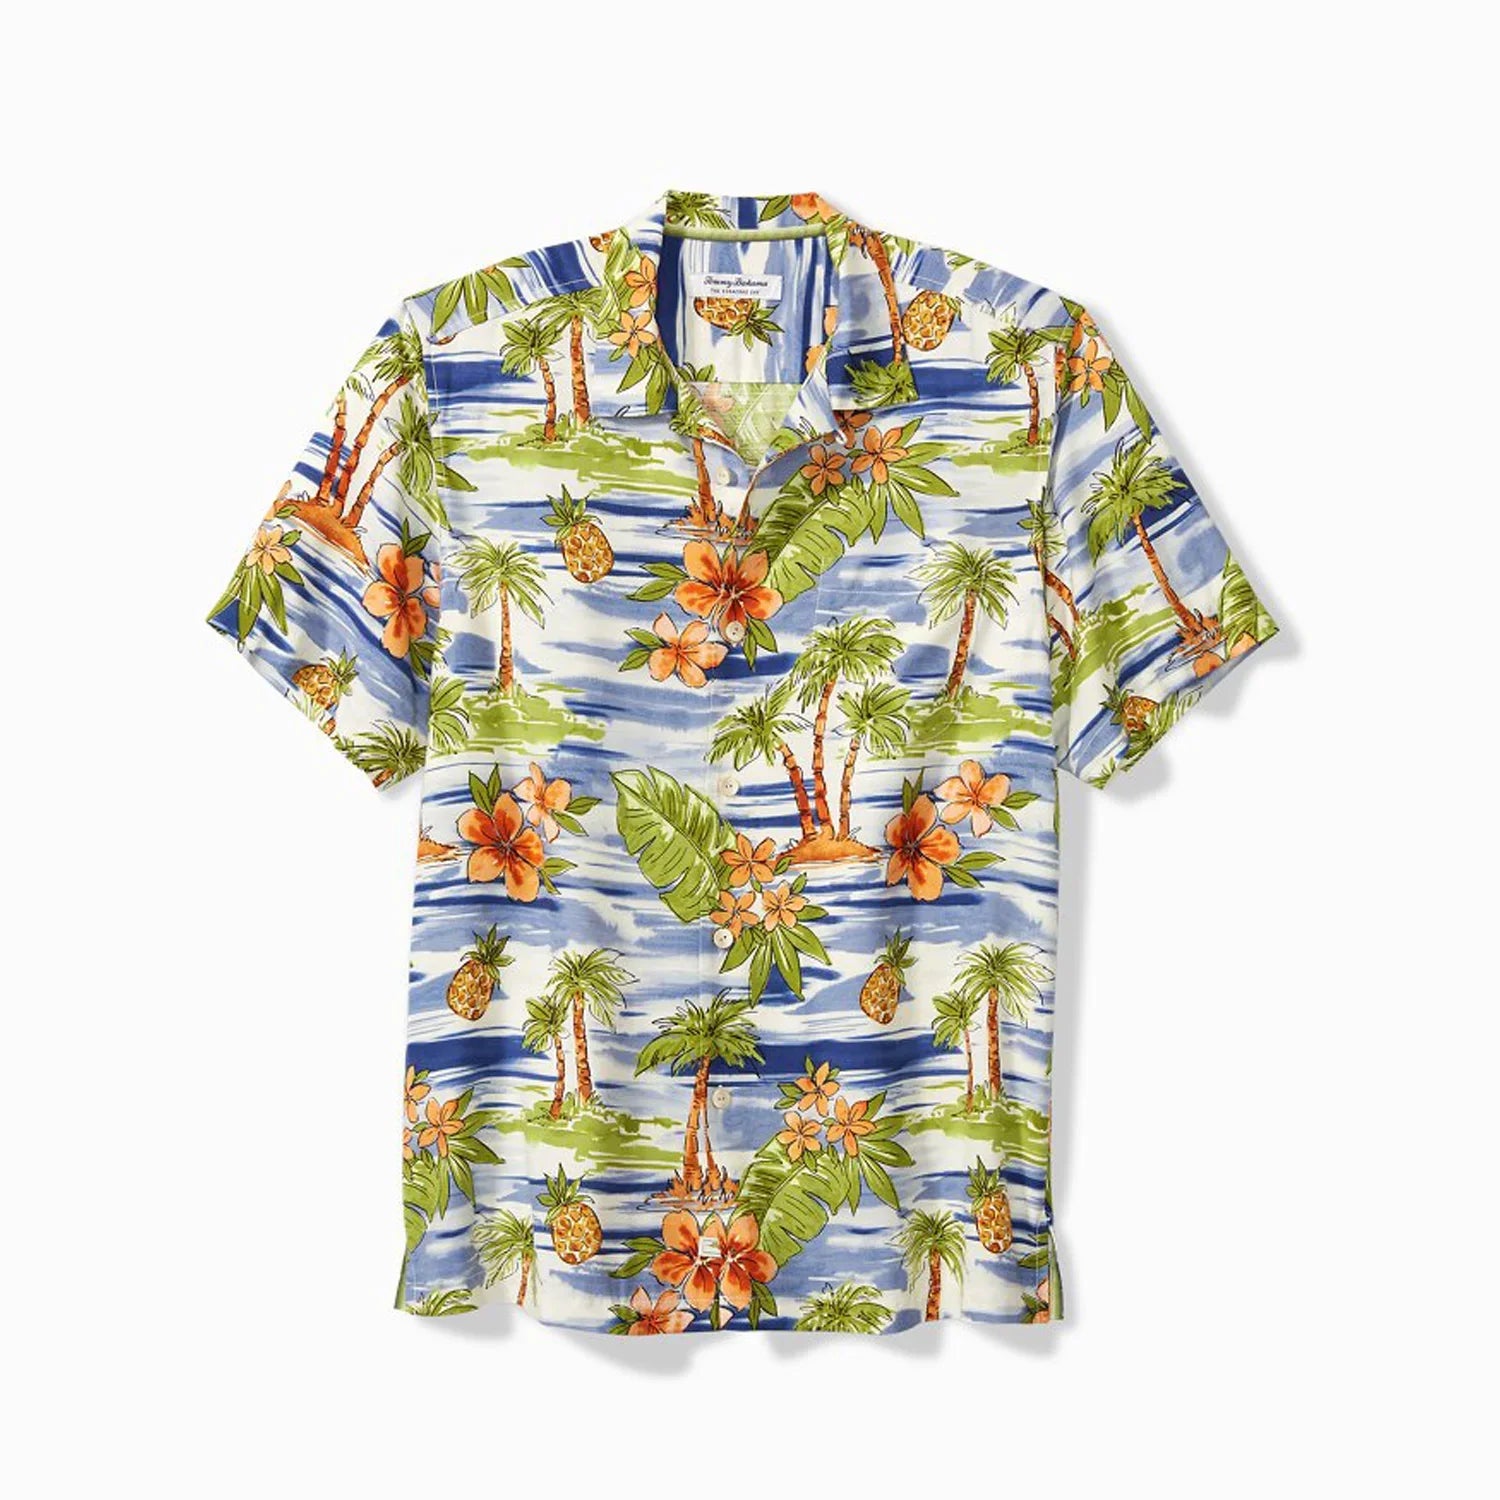 'Tommy Bahama Veracruz Cay Horizon Isles Short-Sleeve Shirt' in 'Neptune' colour